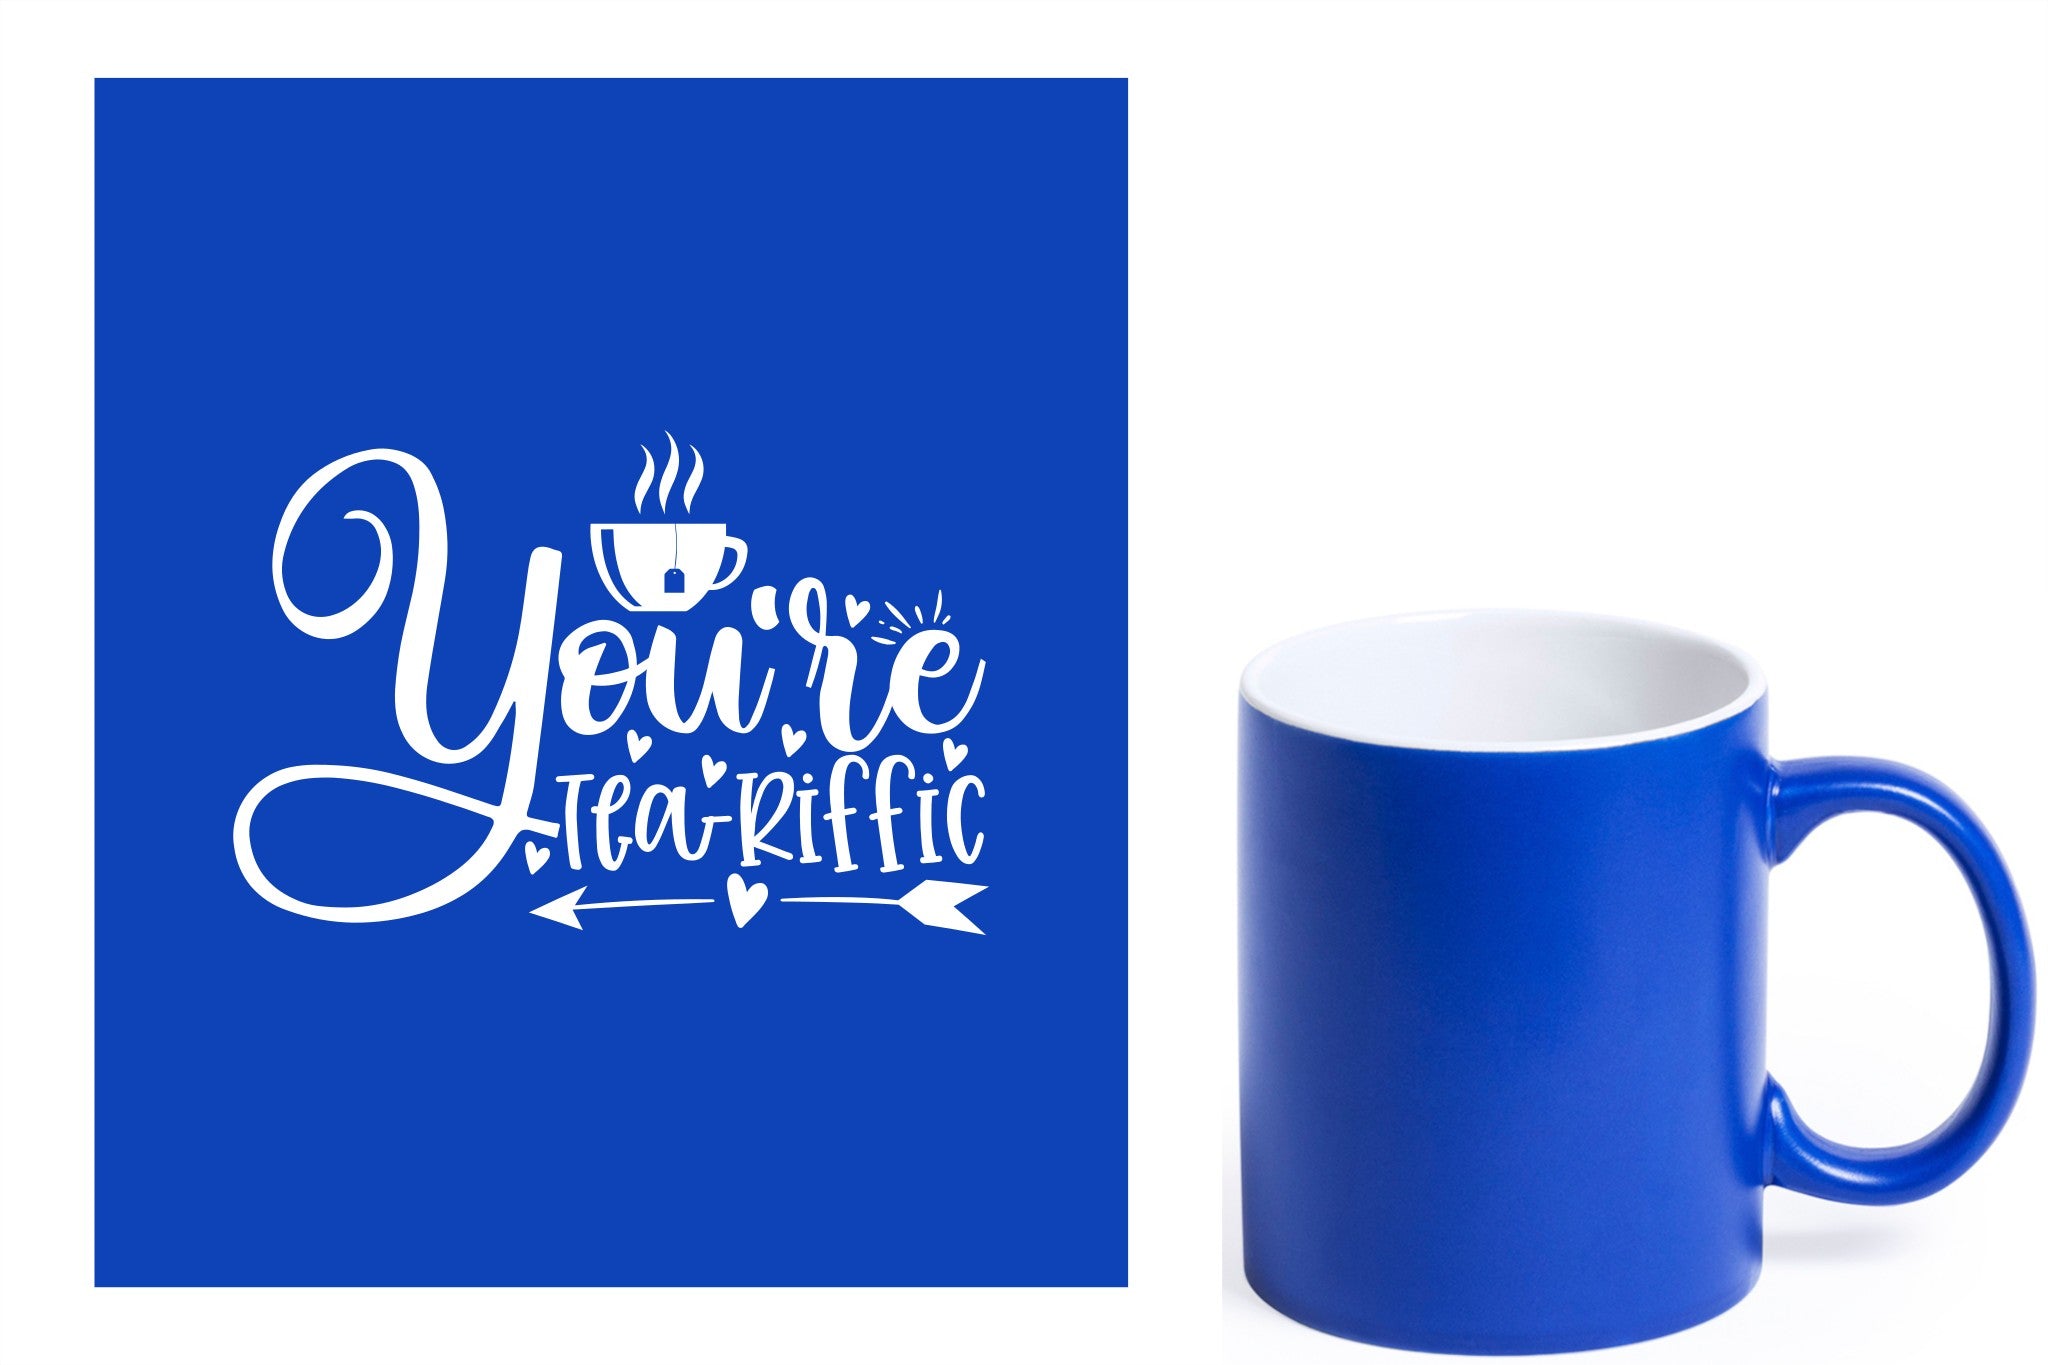 Blauwe keramische mok met witte gravure  'You're teariffic'.